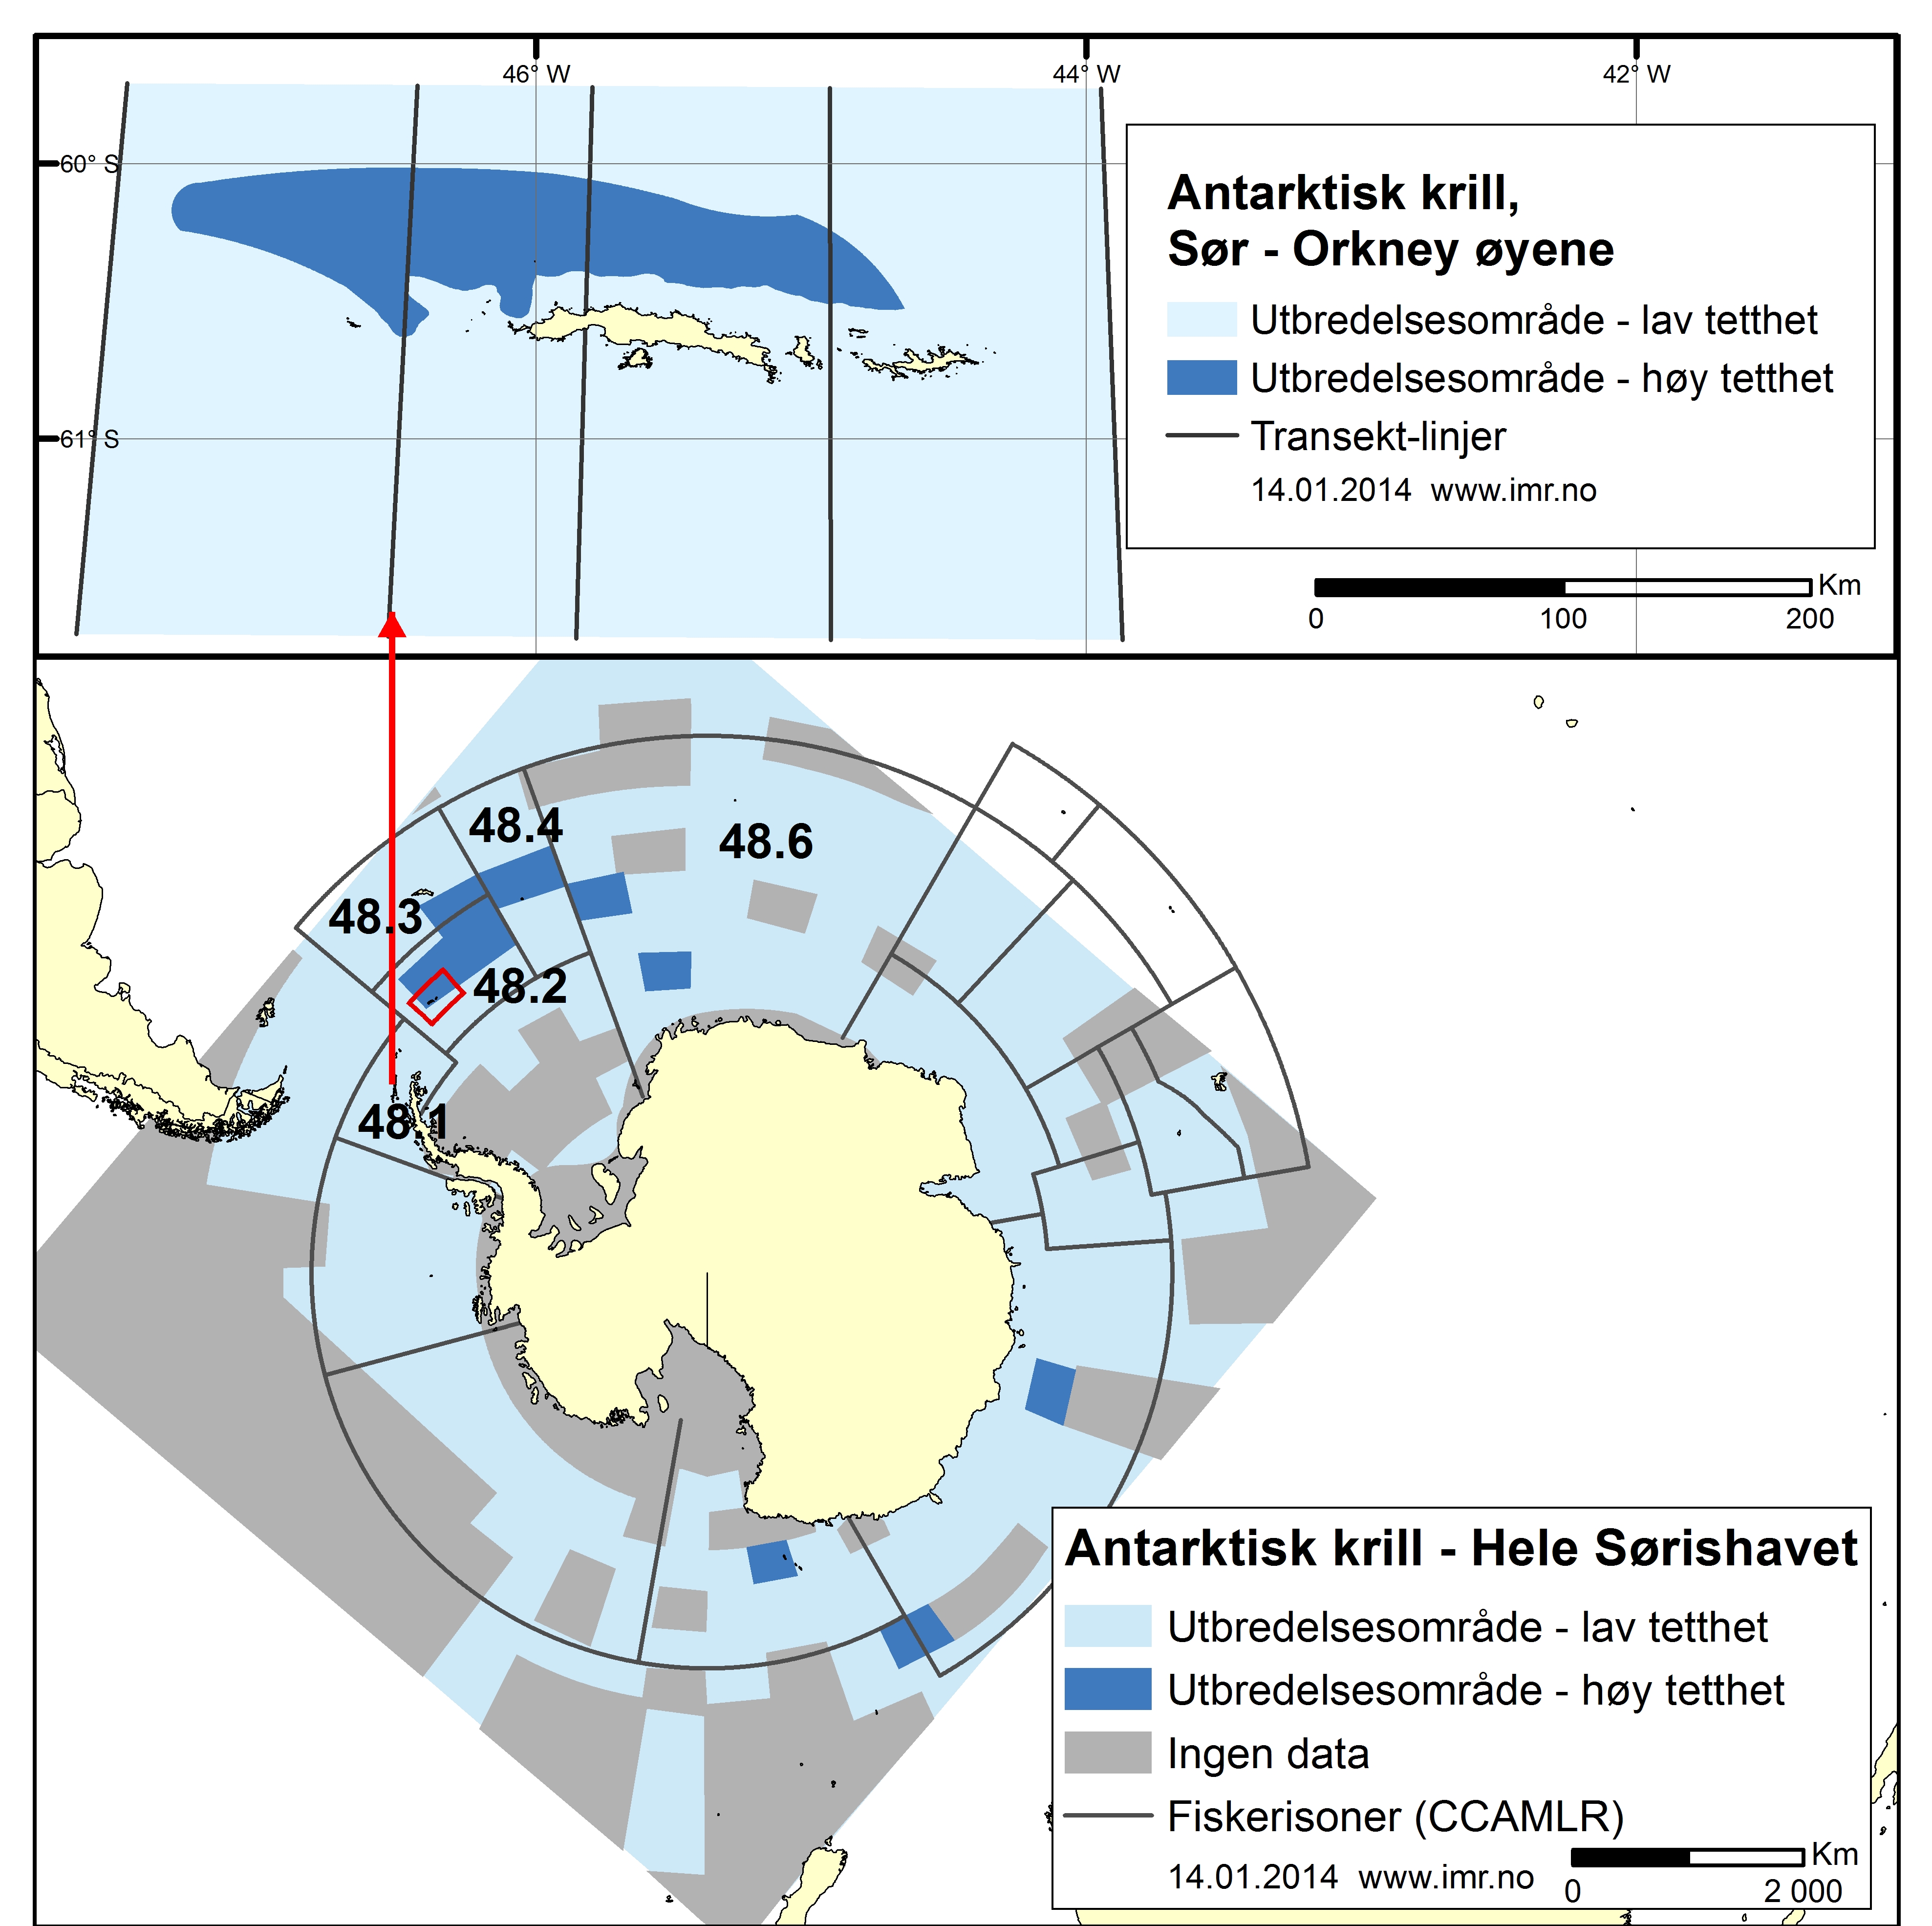 figur som viser krillens utbredelsesområde - øverst for Sør-Orknøyene, nederst for hele Sørishavet